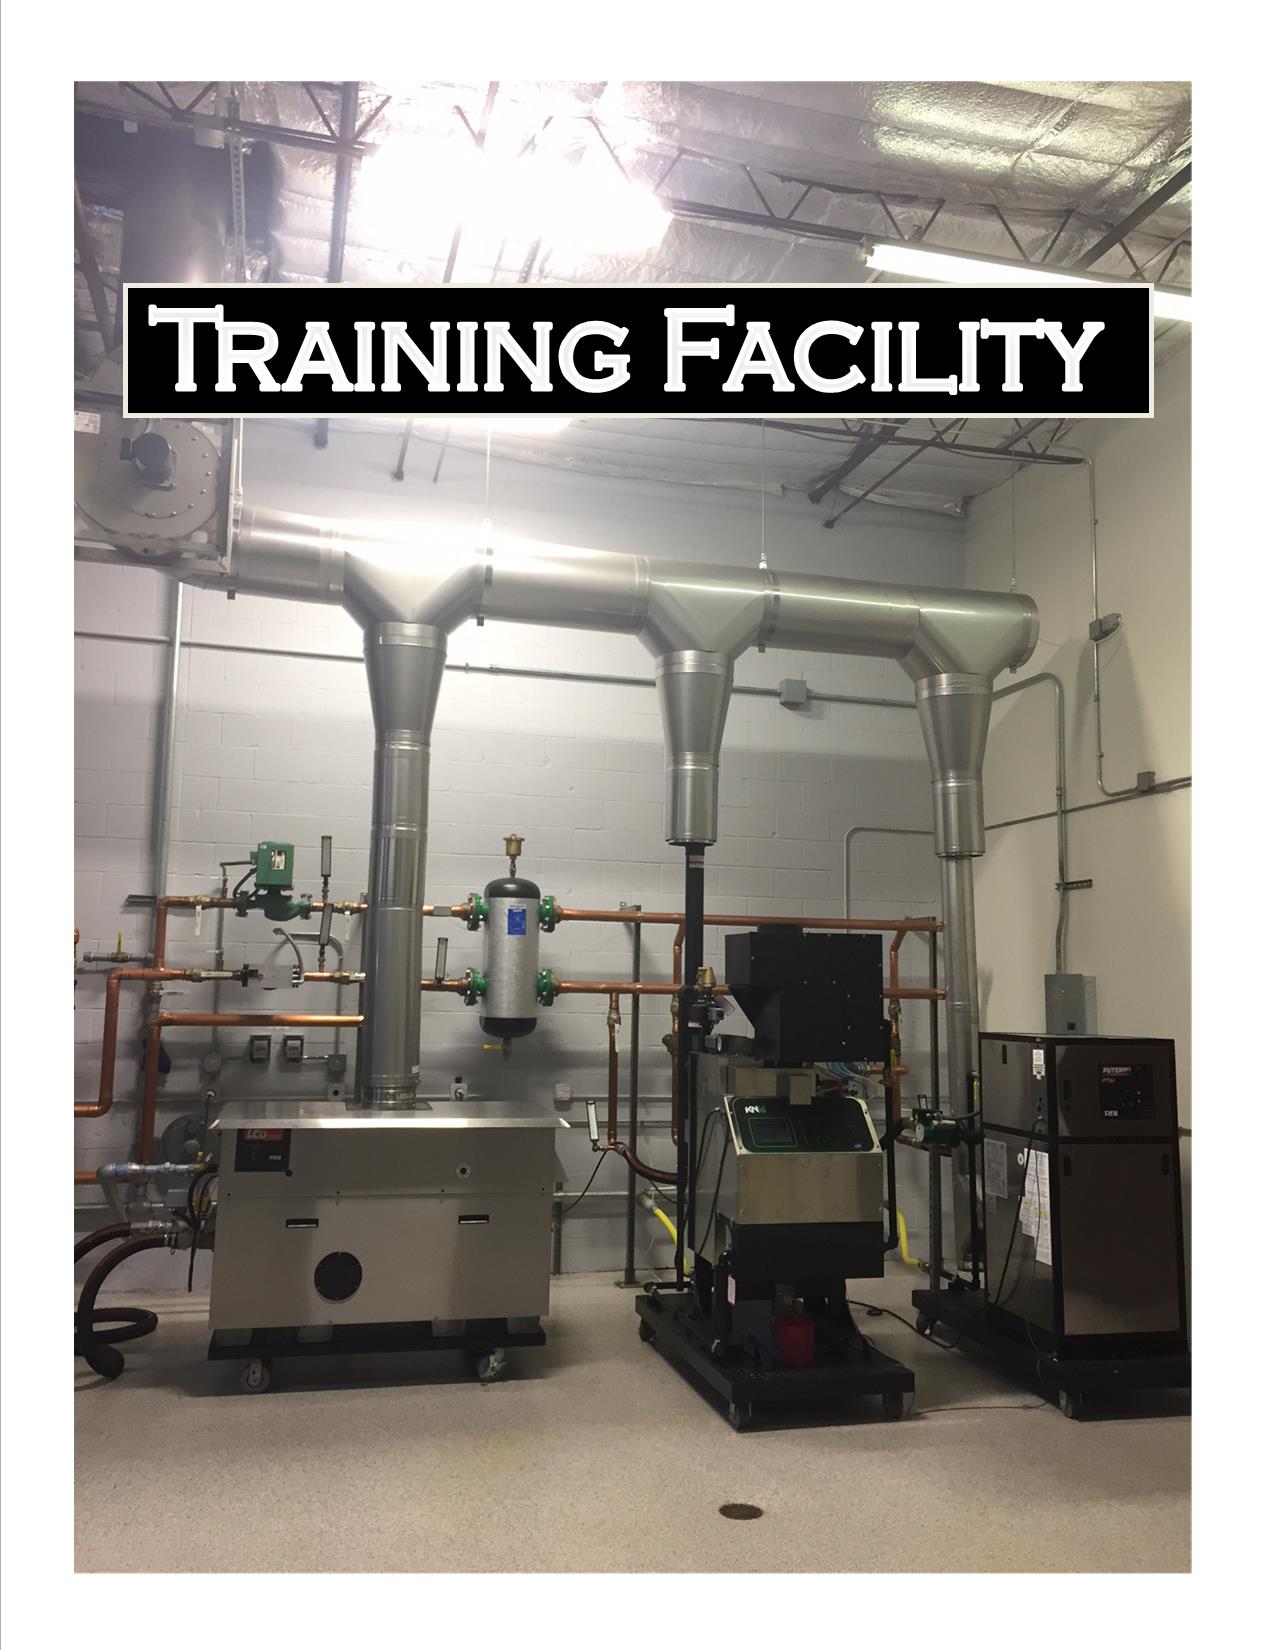 Training For Boilers In Australia